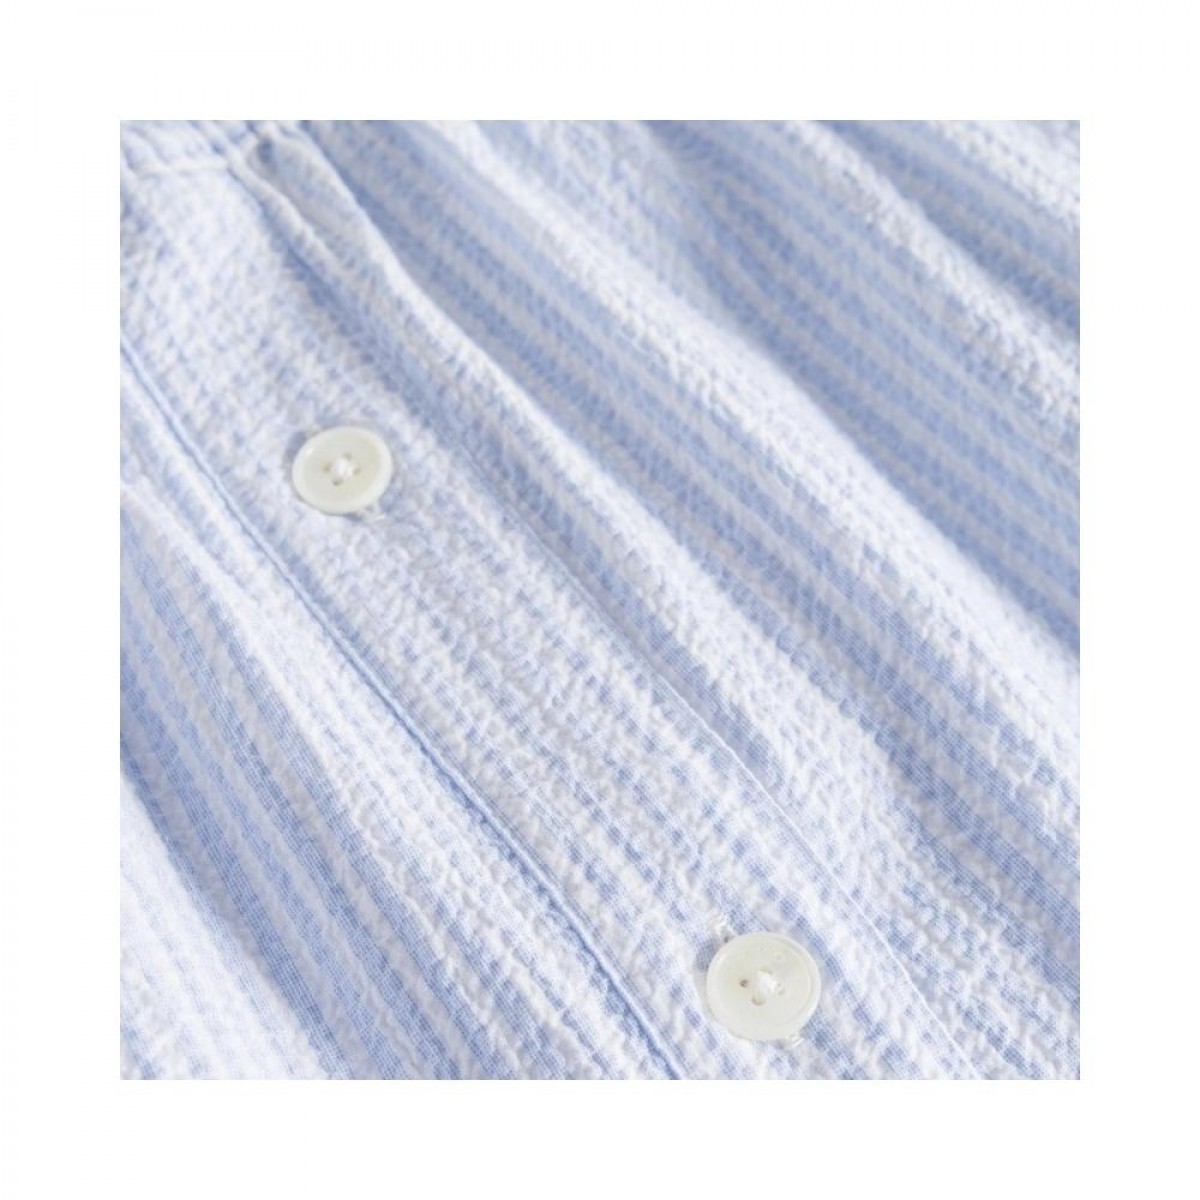 phi skirt - light blue / white stripe - knapper